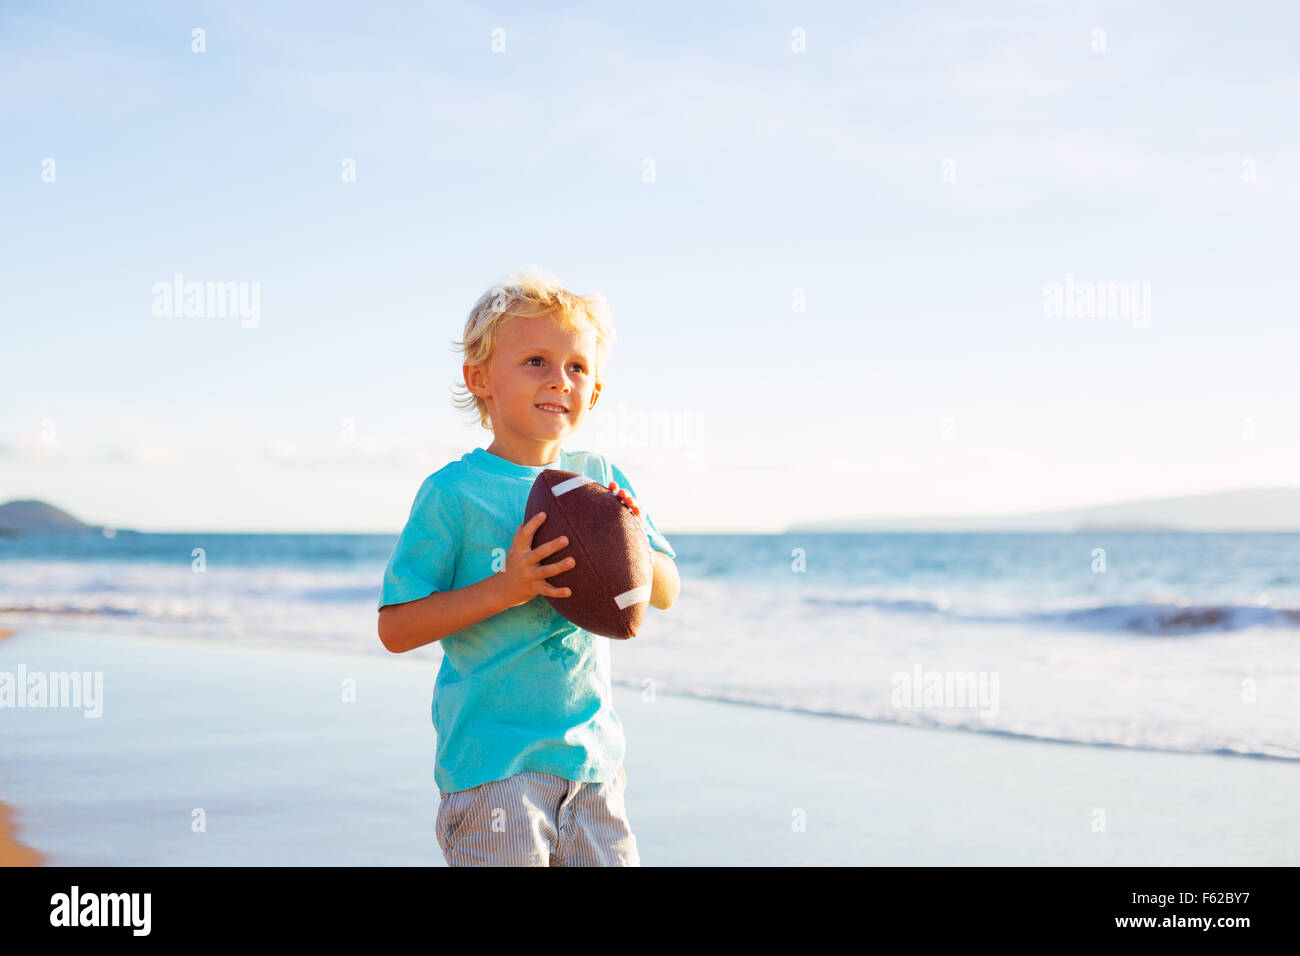 Jeune garçon en rattrapage de jeter le football sur la plage Banque D'Images